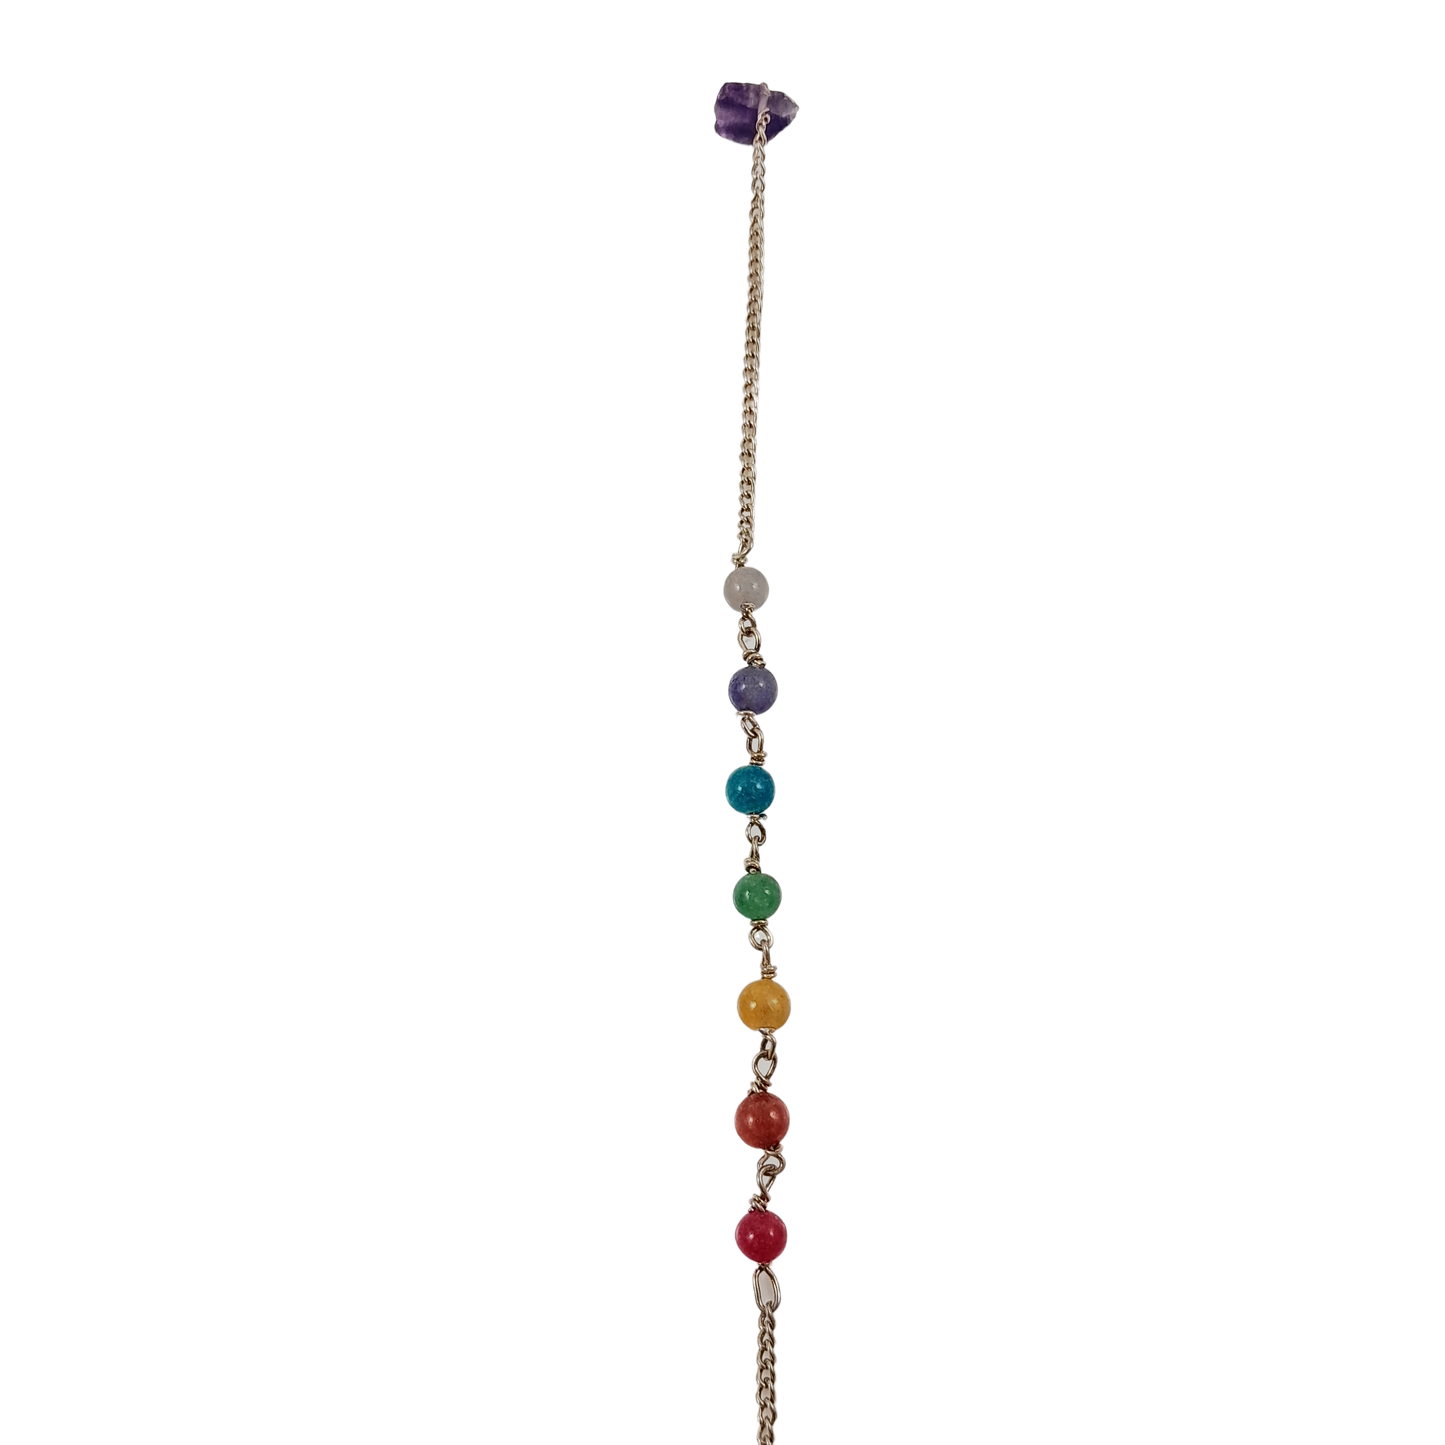 pendulum chakra bead chain